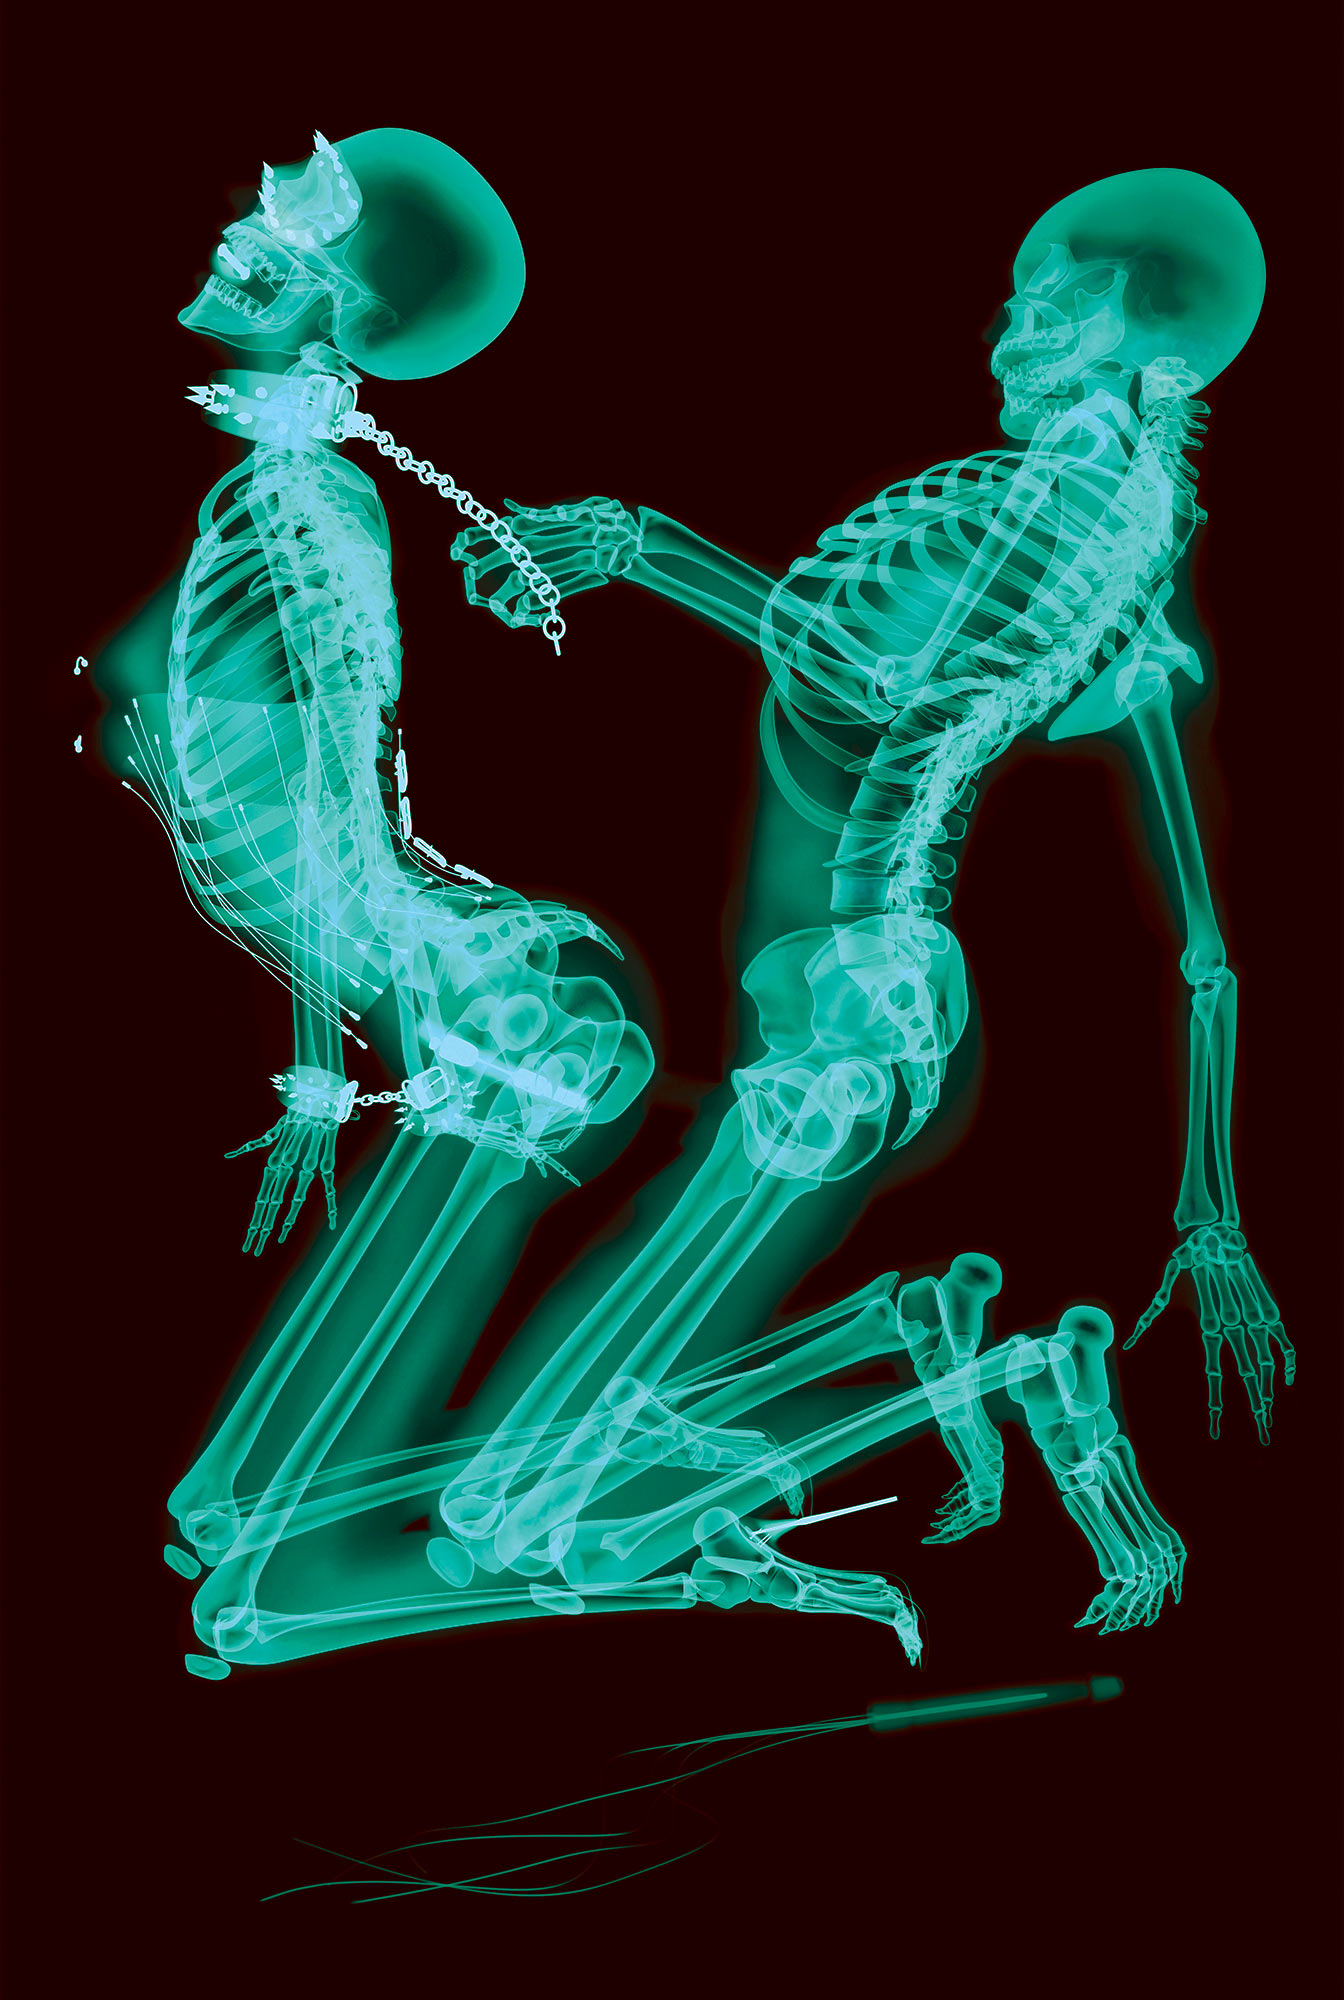 Із серії X-ray professional photo, 2011